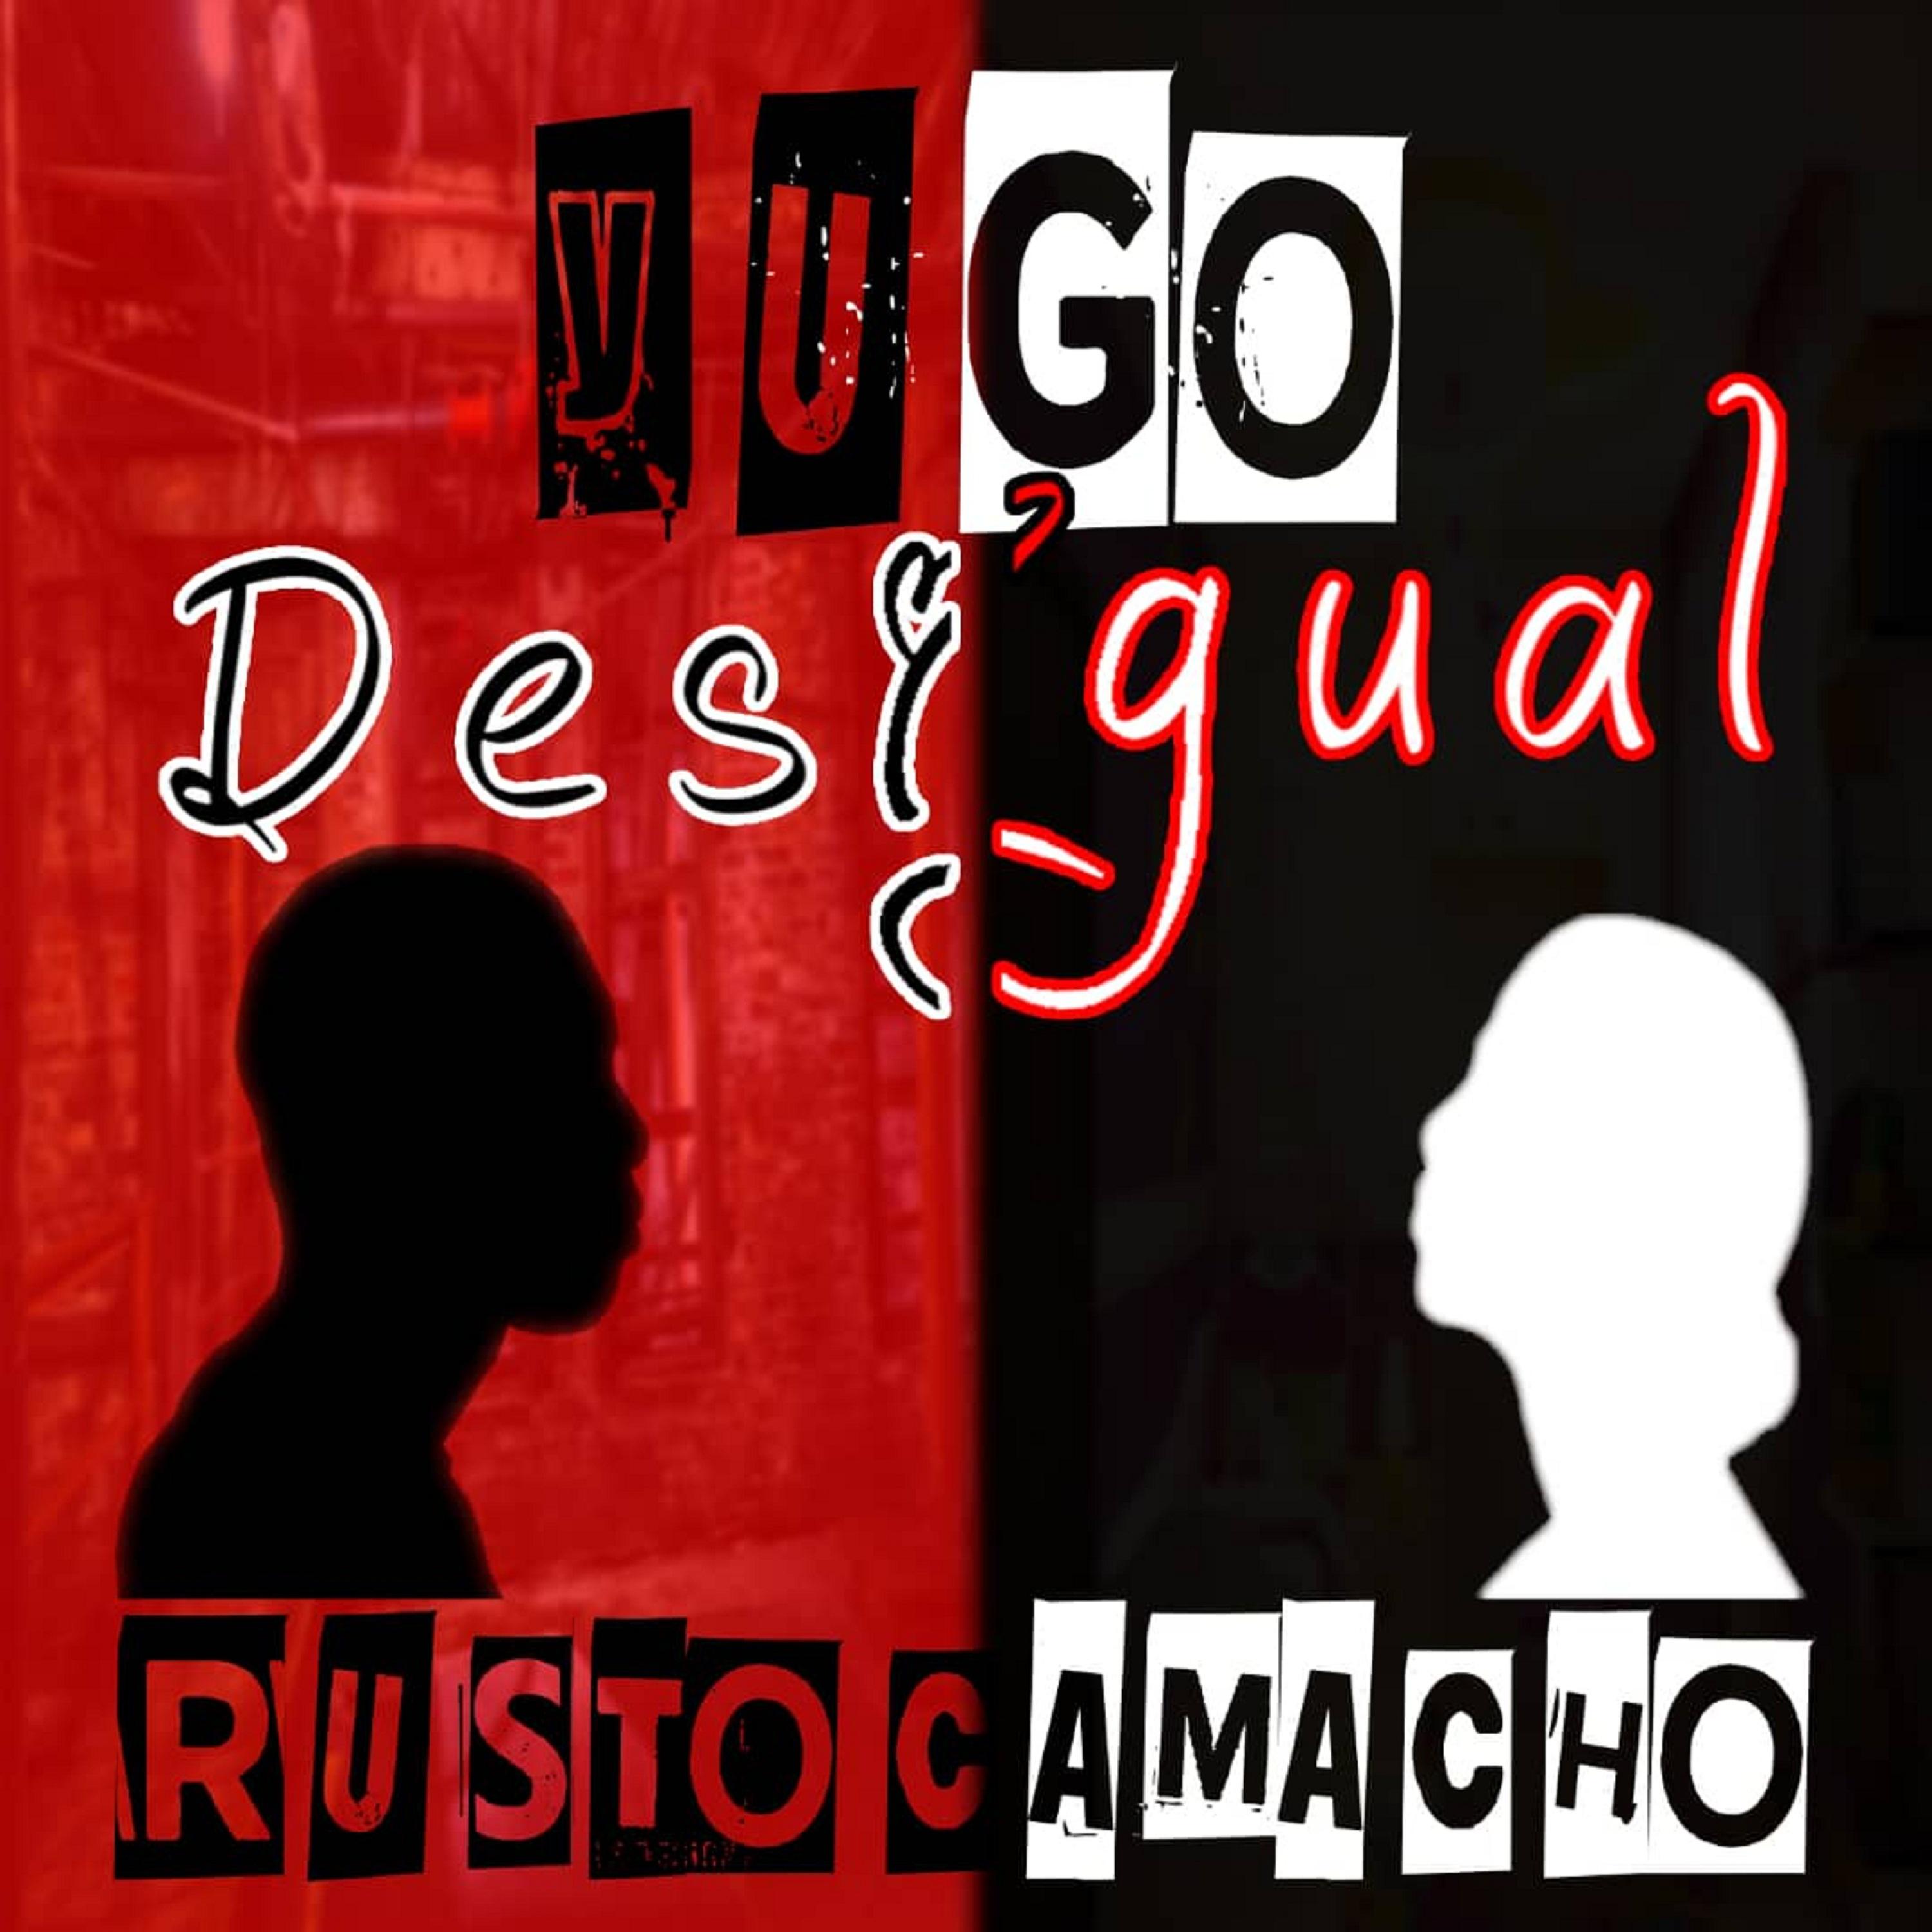 Rusto Camacho - Yugo Desigual